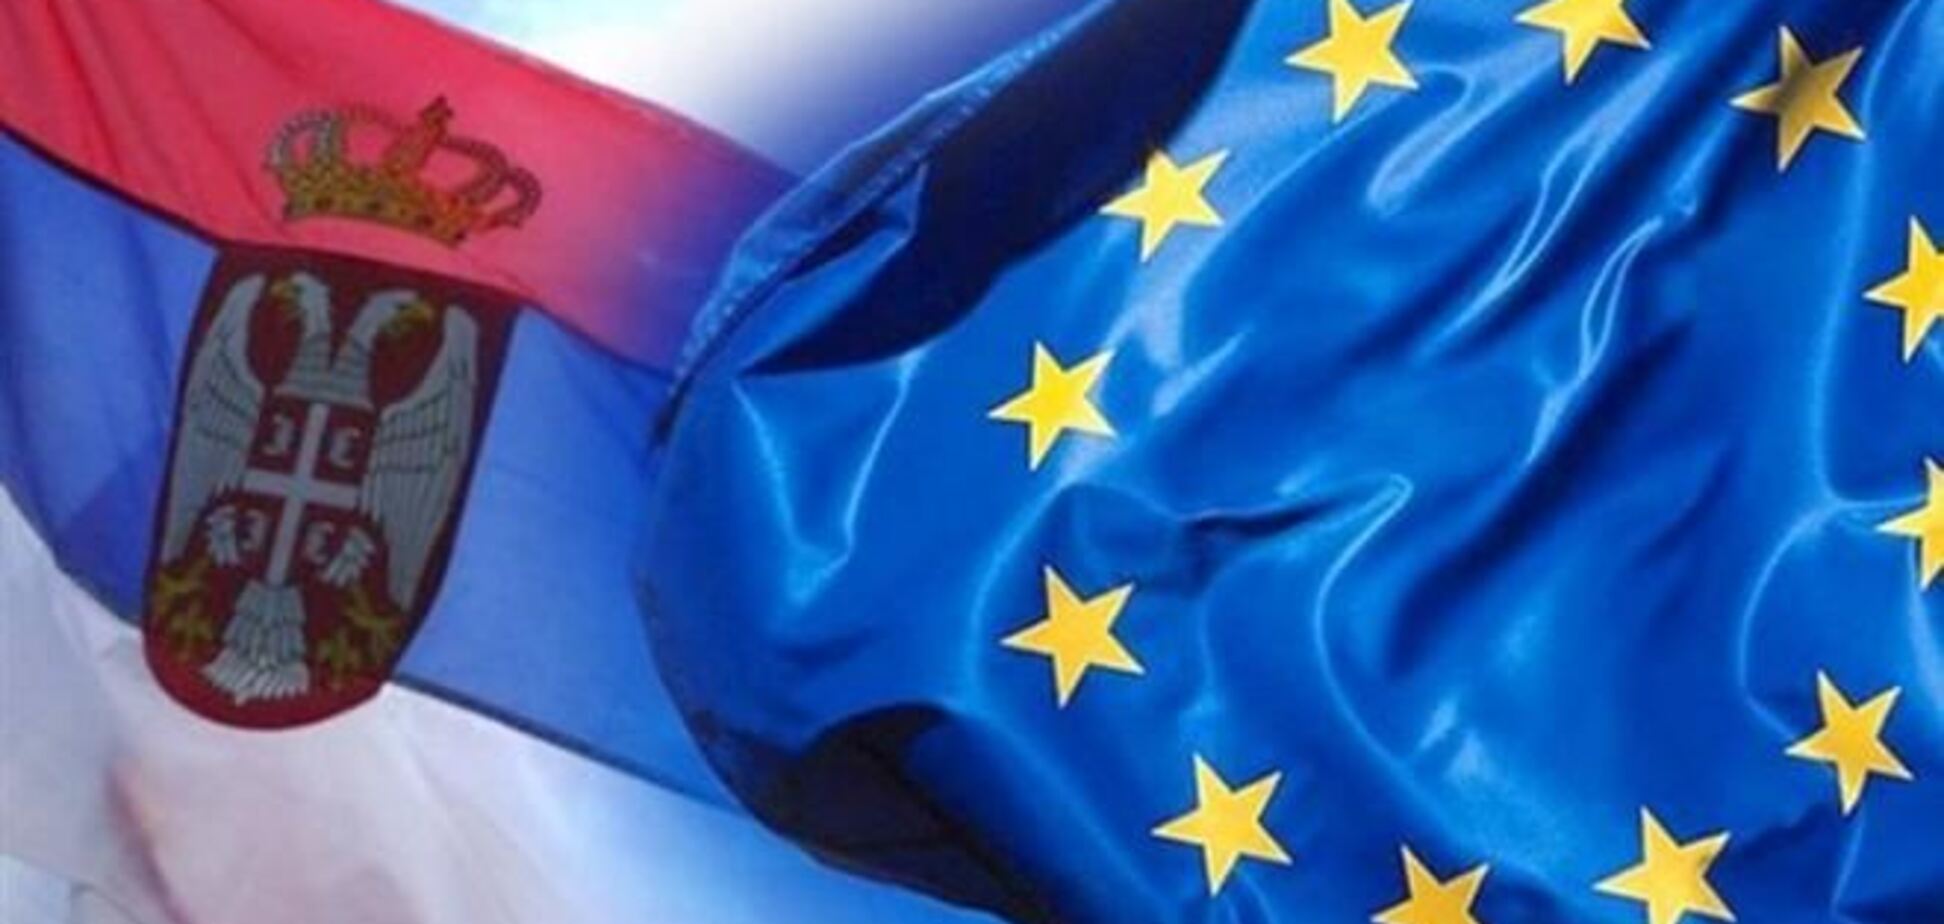 Ештон закличе почати переговори з Сербією про вступ до ЄС